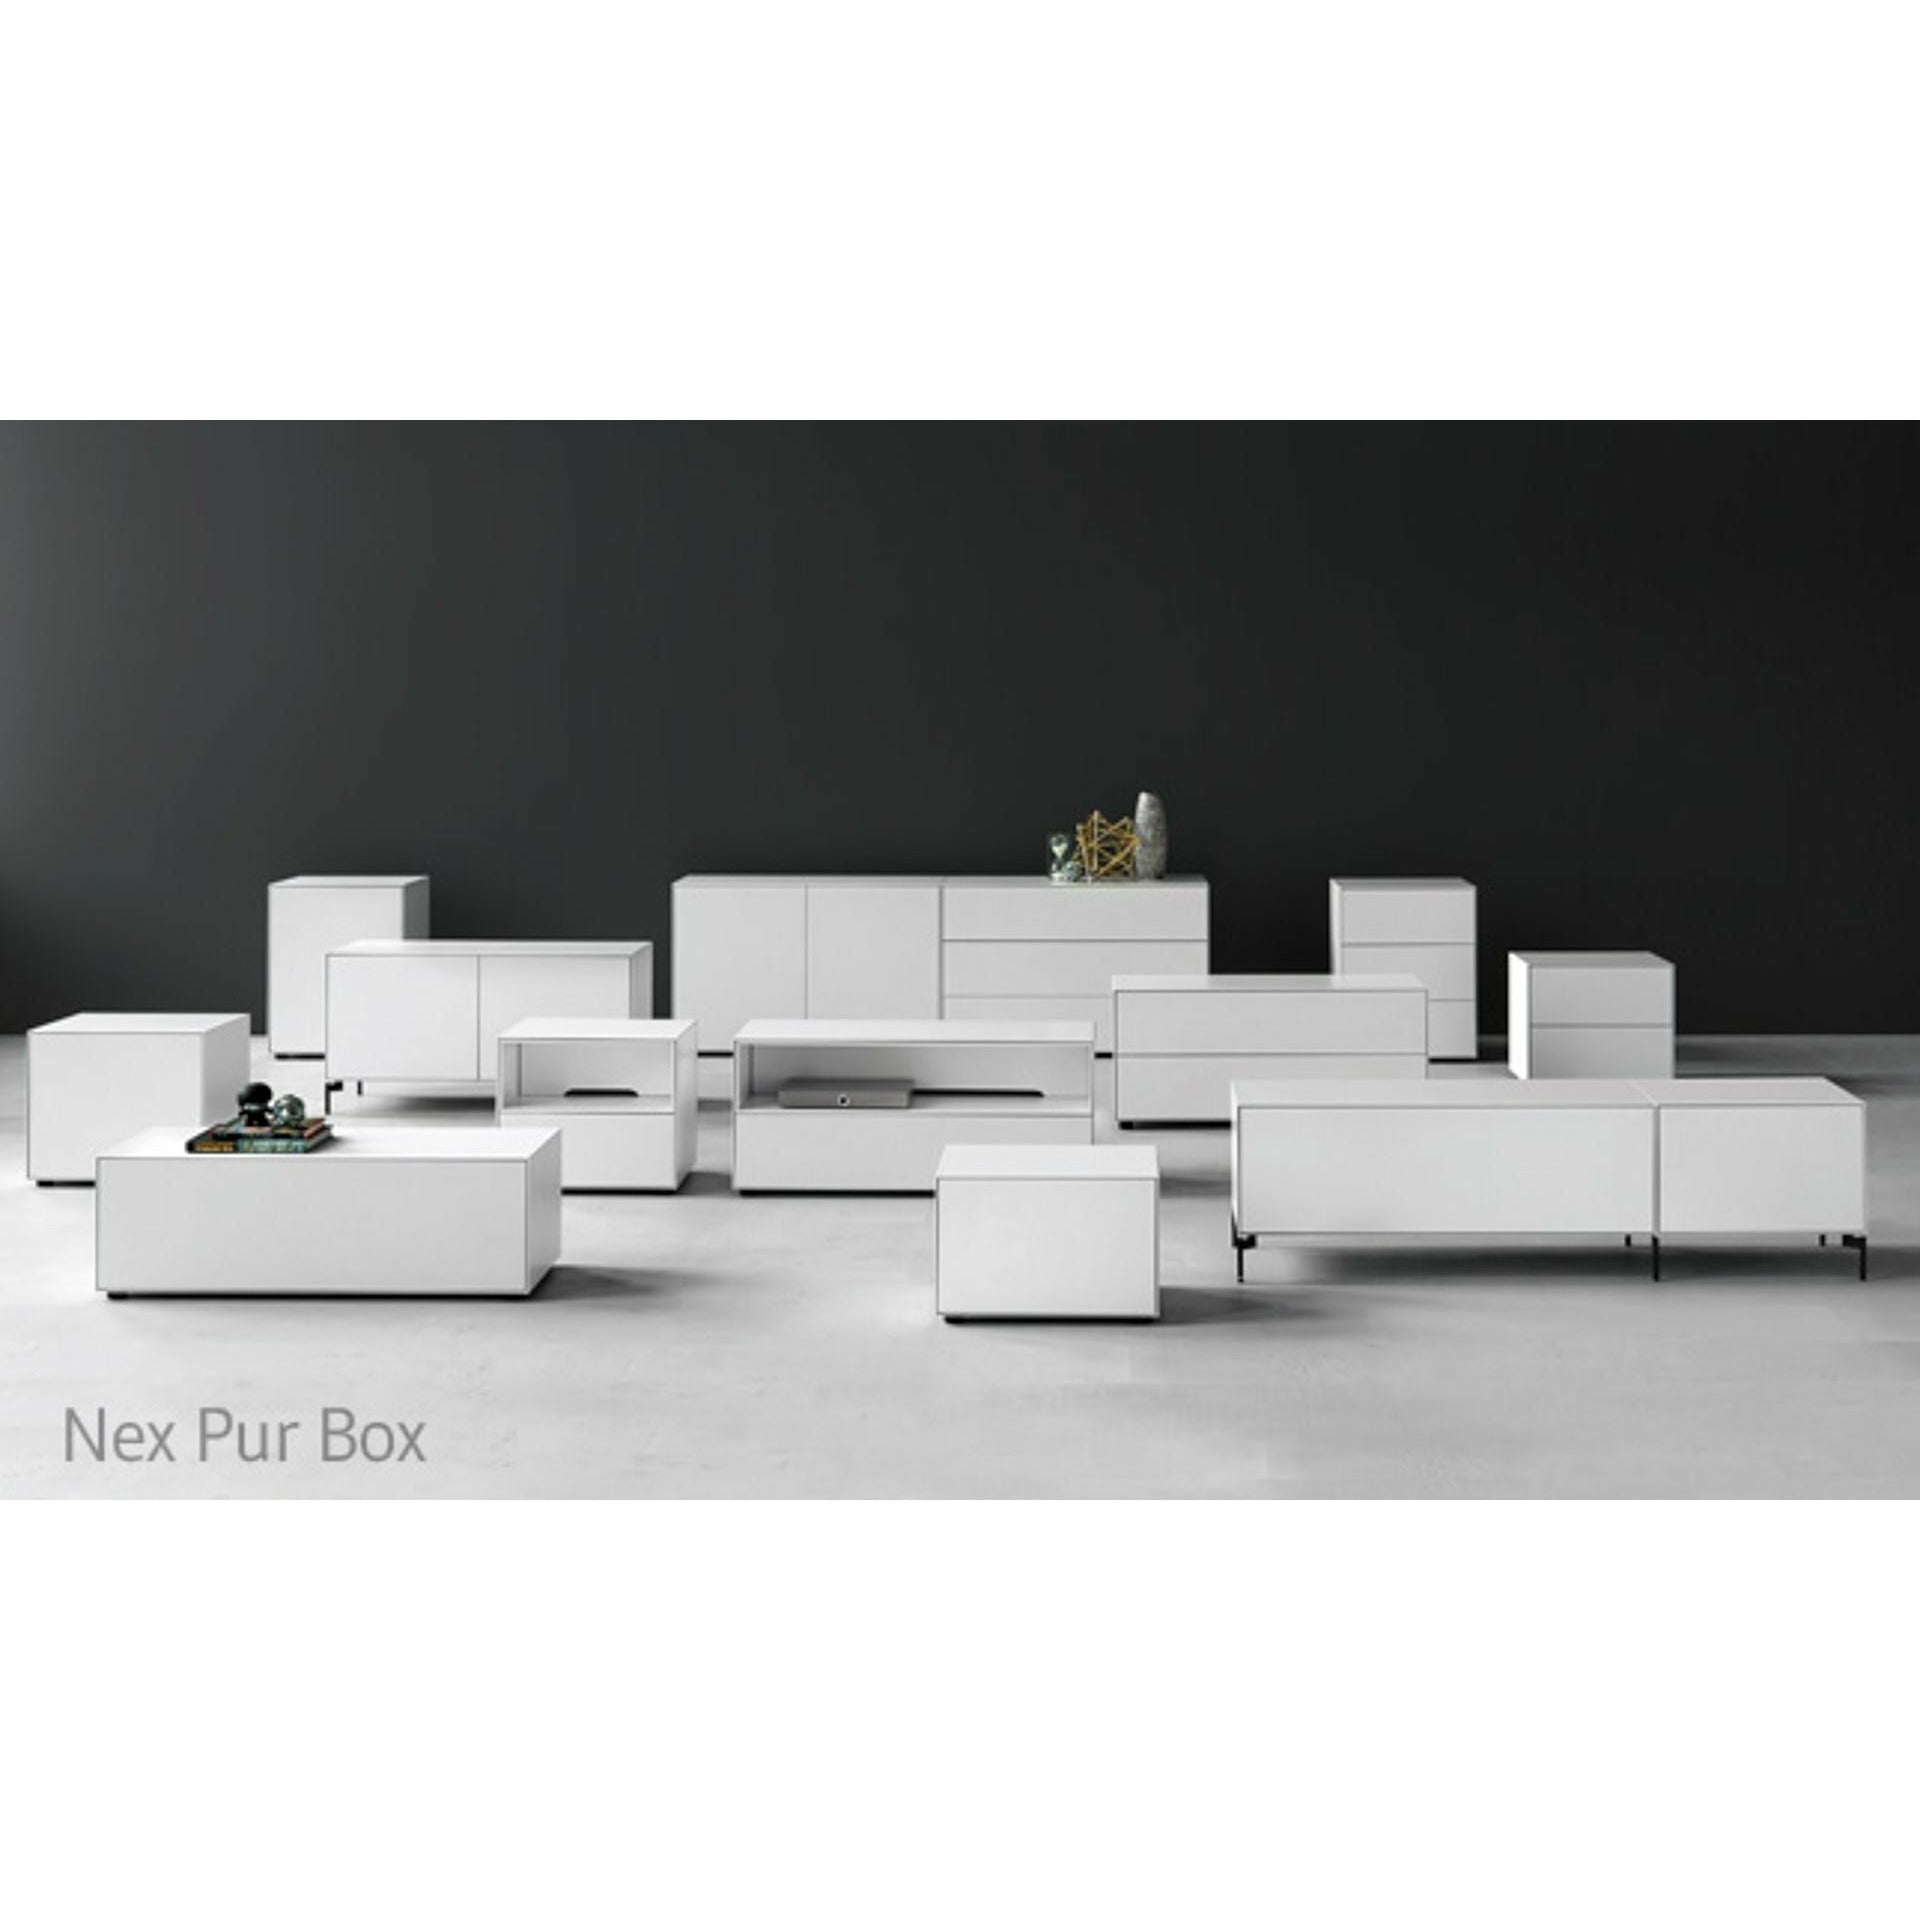 Piure Nex Pur Box Media Flap Hx W 37,5x120 Cm, 1 Shelf